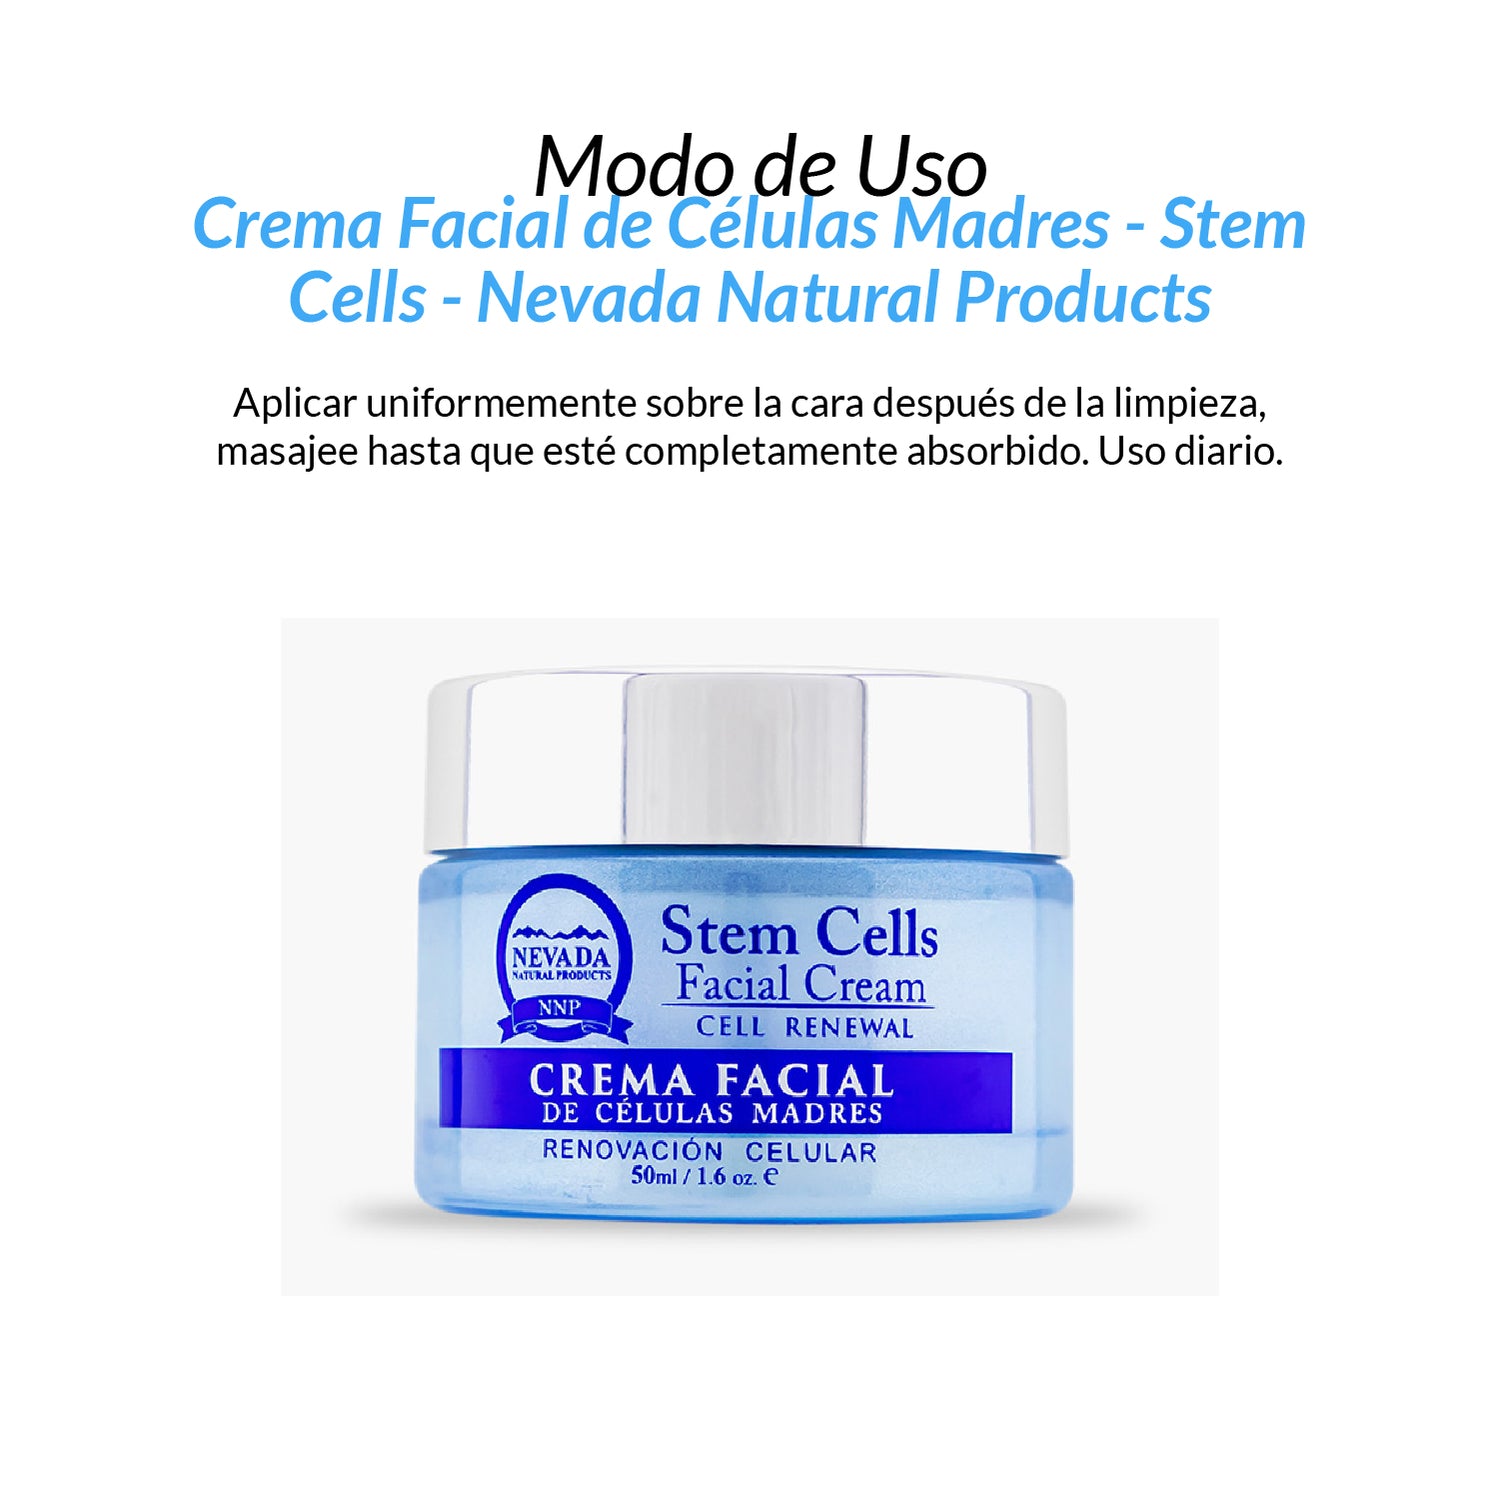 Crema Facial de Celulas Madres - Stem Cells